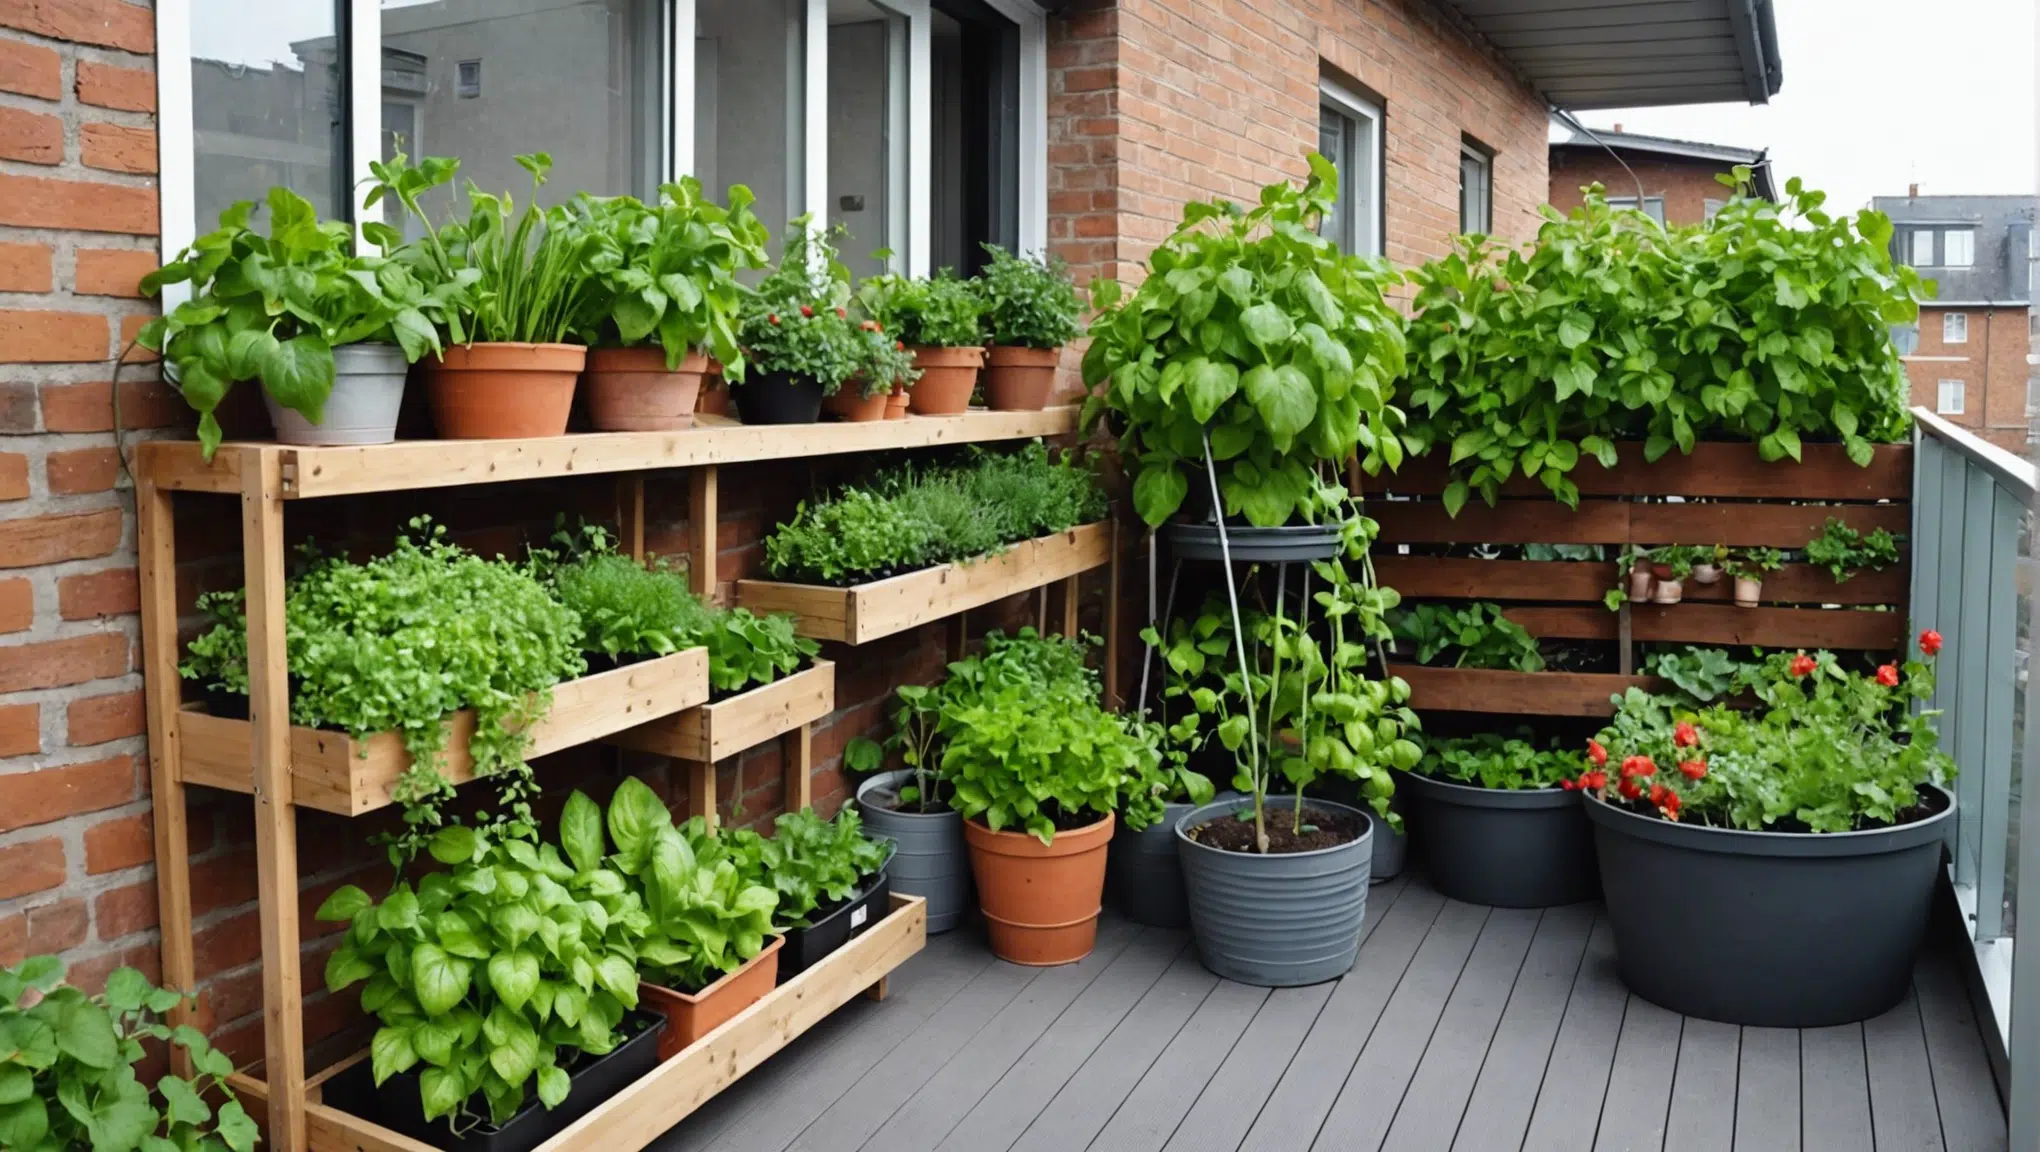 découvrez comment cultiver un potager luxuriant sur votre balcon en ville grâce à nos conseils pratiques et astuces de jardinage.